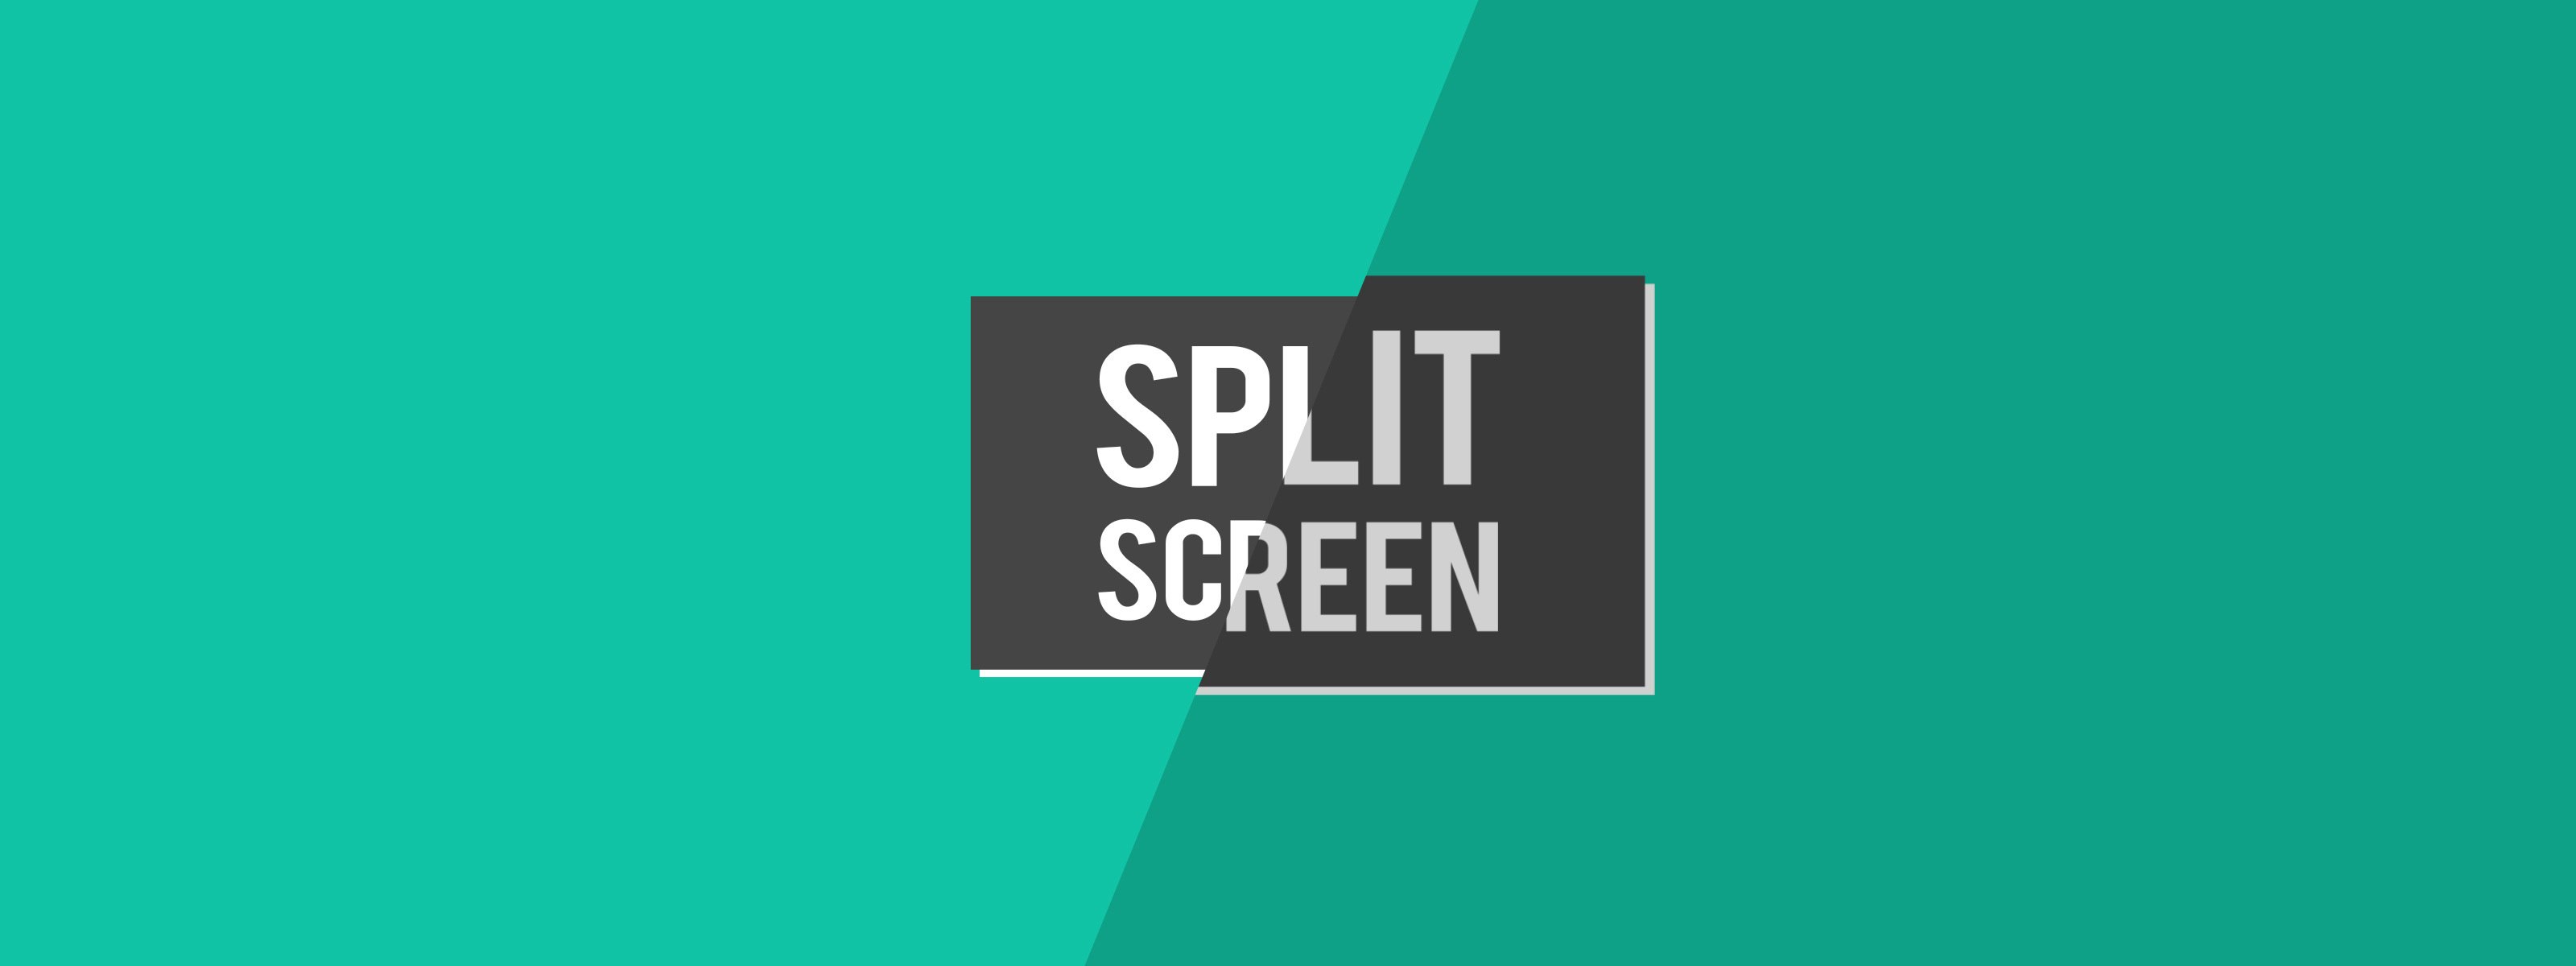 Split Screen Template Premiere Pro Free